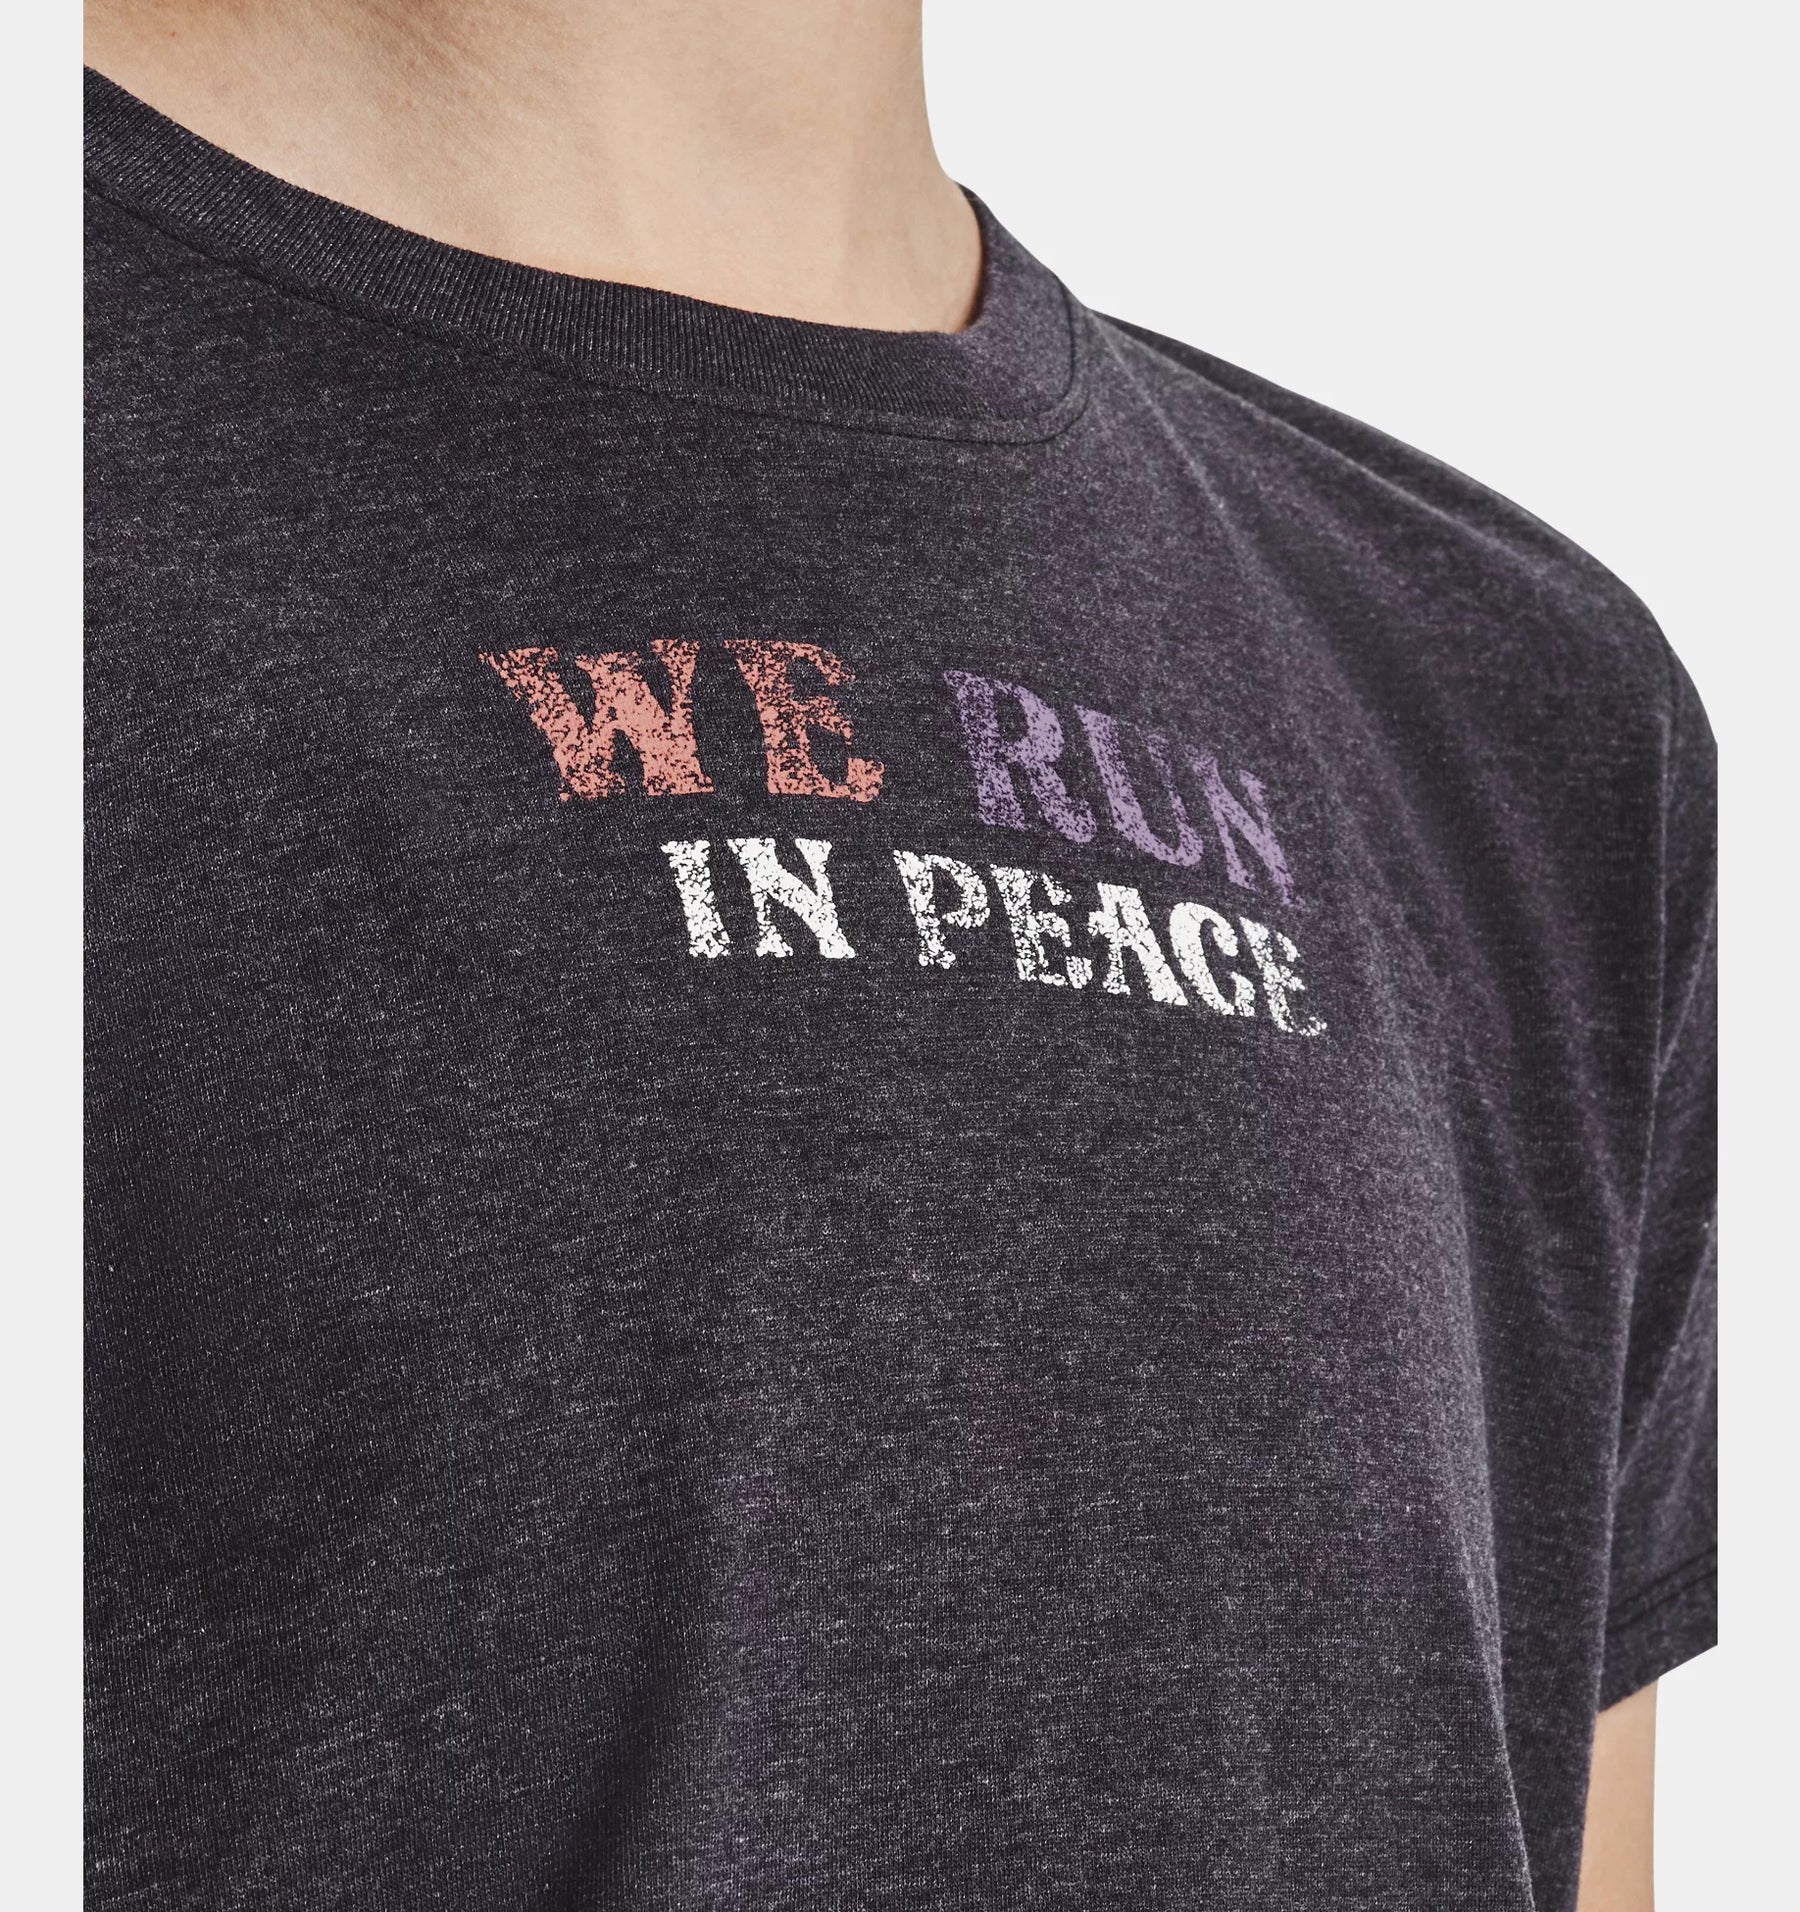 Under Armour Run In Peace - T-Shirt Da Running Donna - Neverland Firenze